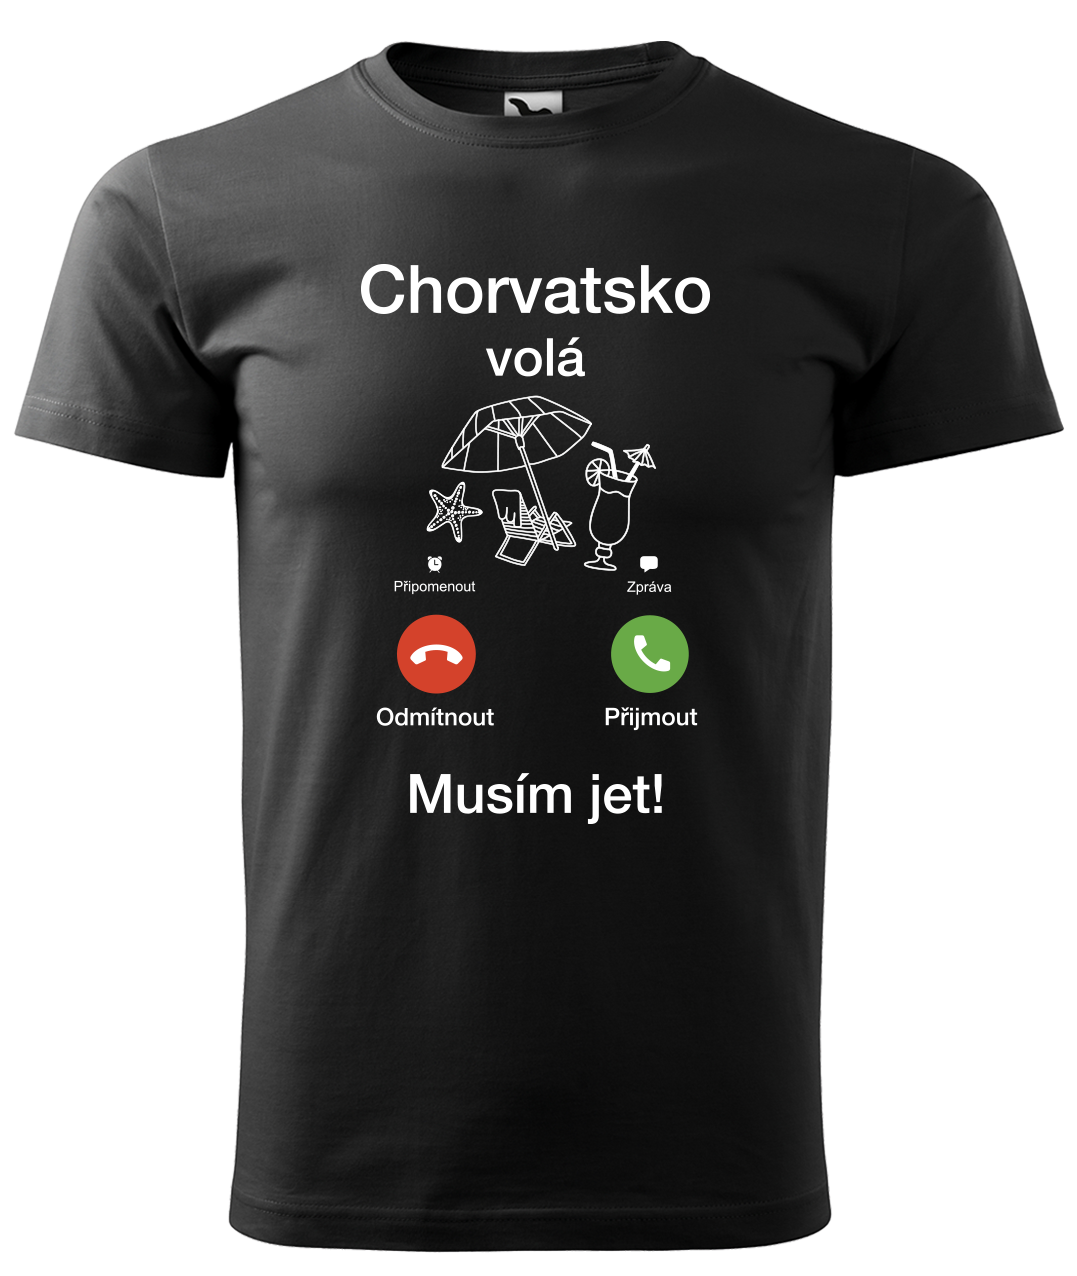 Dětské cestovatelské tričko - Chorvatsko volá - musím jet! Velikost: 4 roky / 110 cm, Barva: Černá (01)